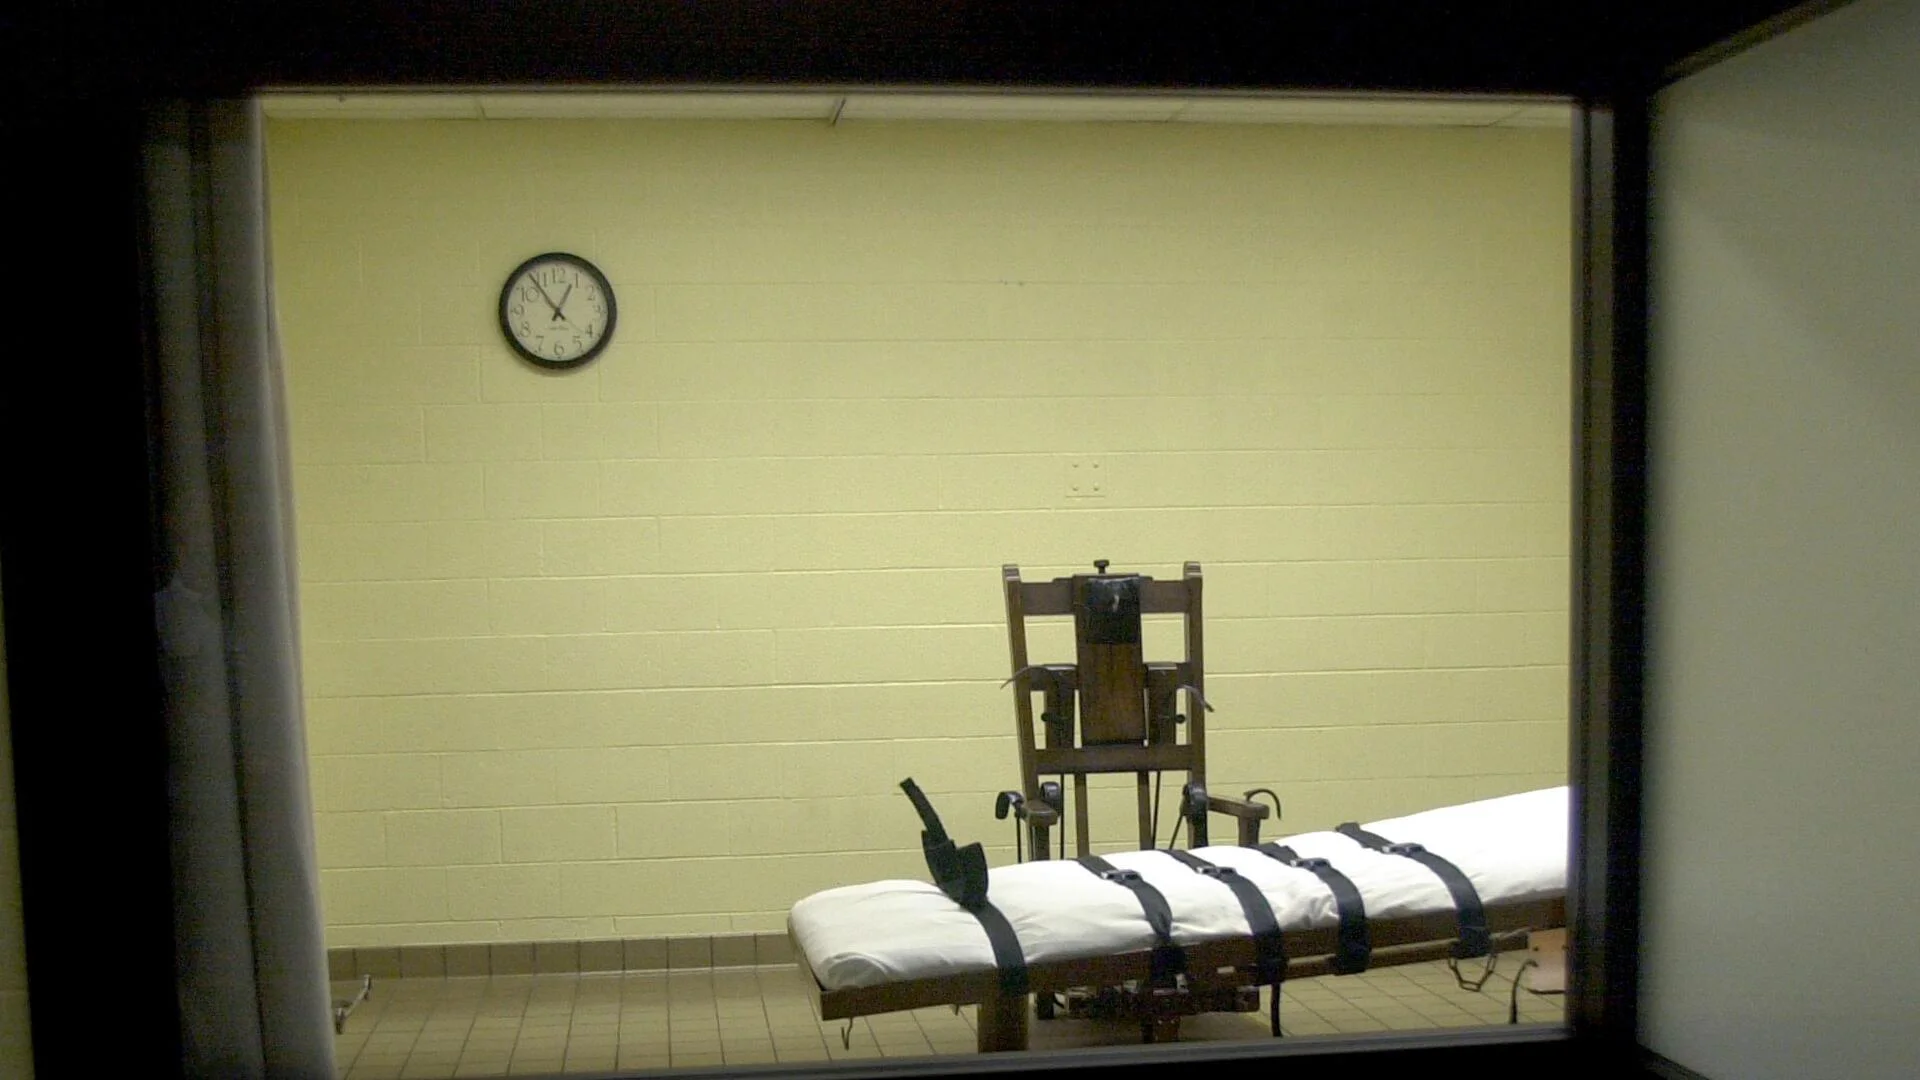 Смъртна присъда чрез отравяне: Алабама я изпълни за пръв път